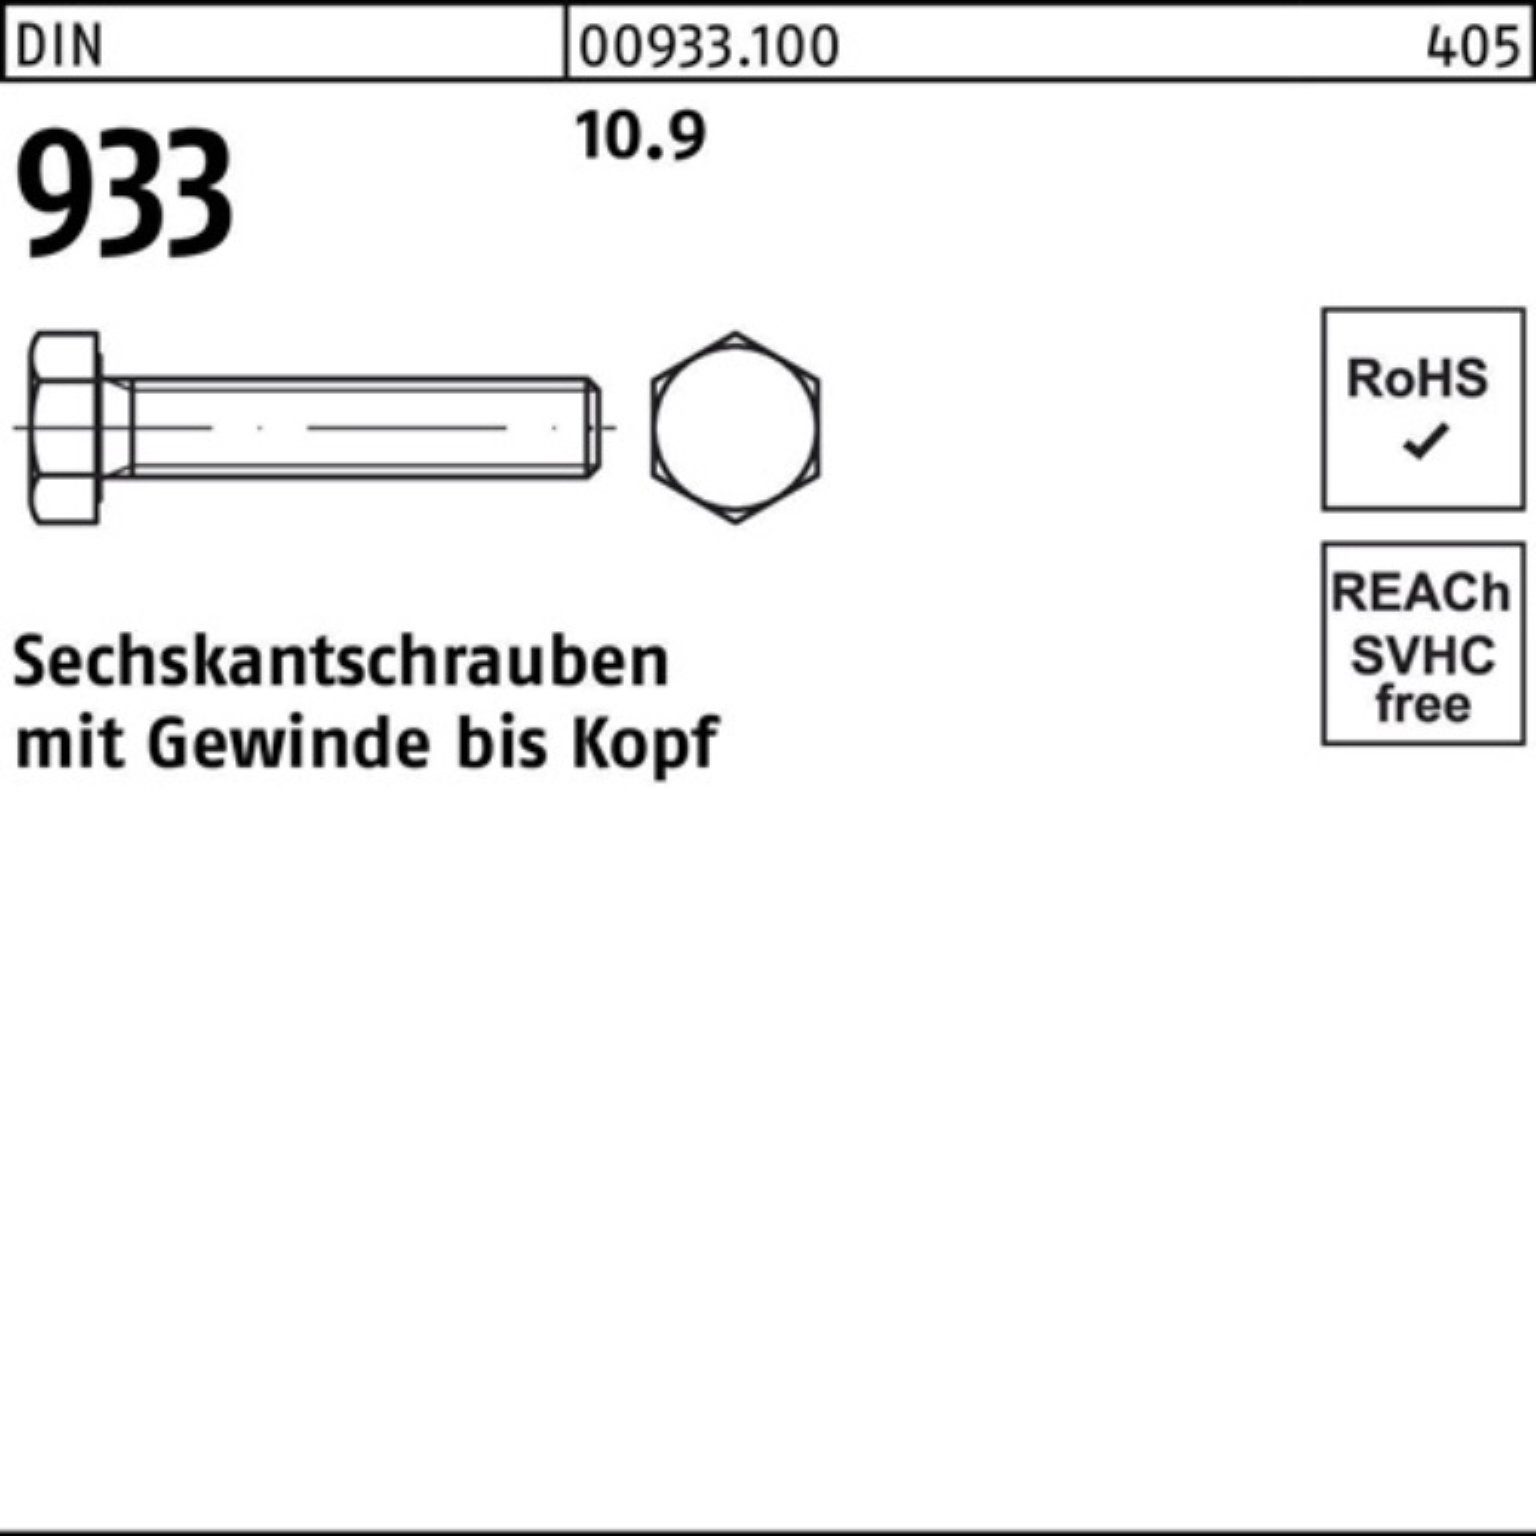 VG M36x DIN Stück Sechskantschraube 10.9 DIN Pack 933 933 Sechskantschraube Reyher 1 100er 60